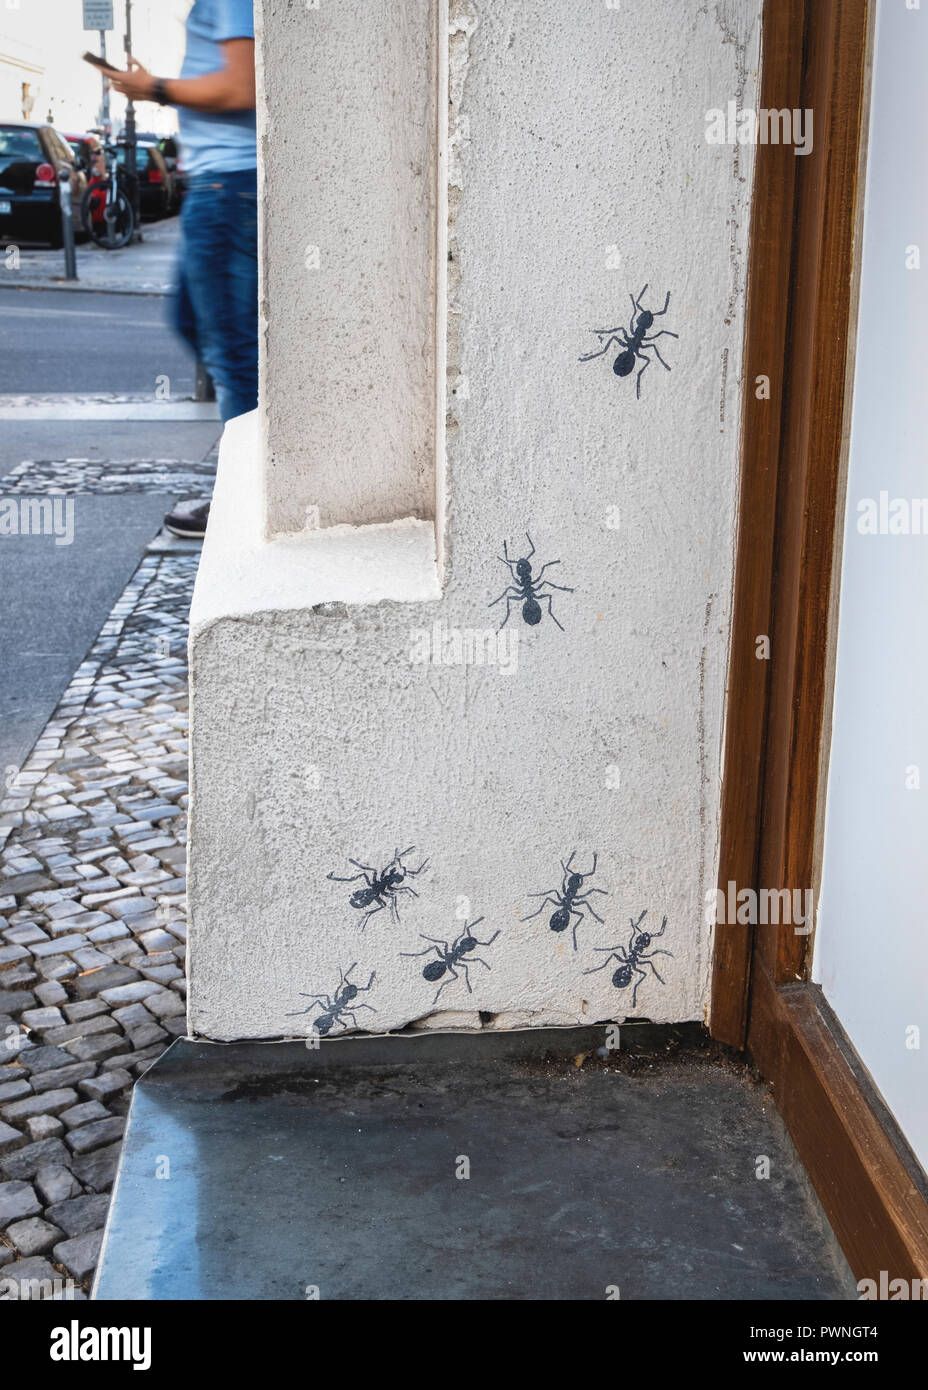 Street art à Berlin, la faune urbaine, peint les fourmis ramper vers le haut mur du bâtiment Banque D'Images